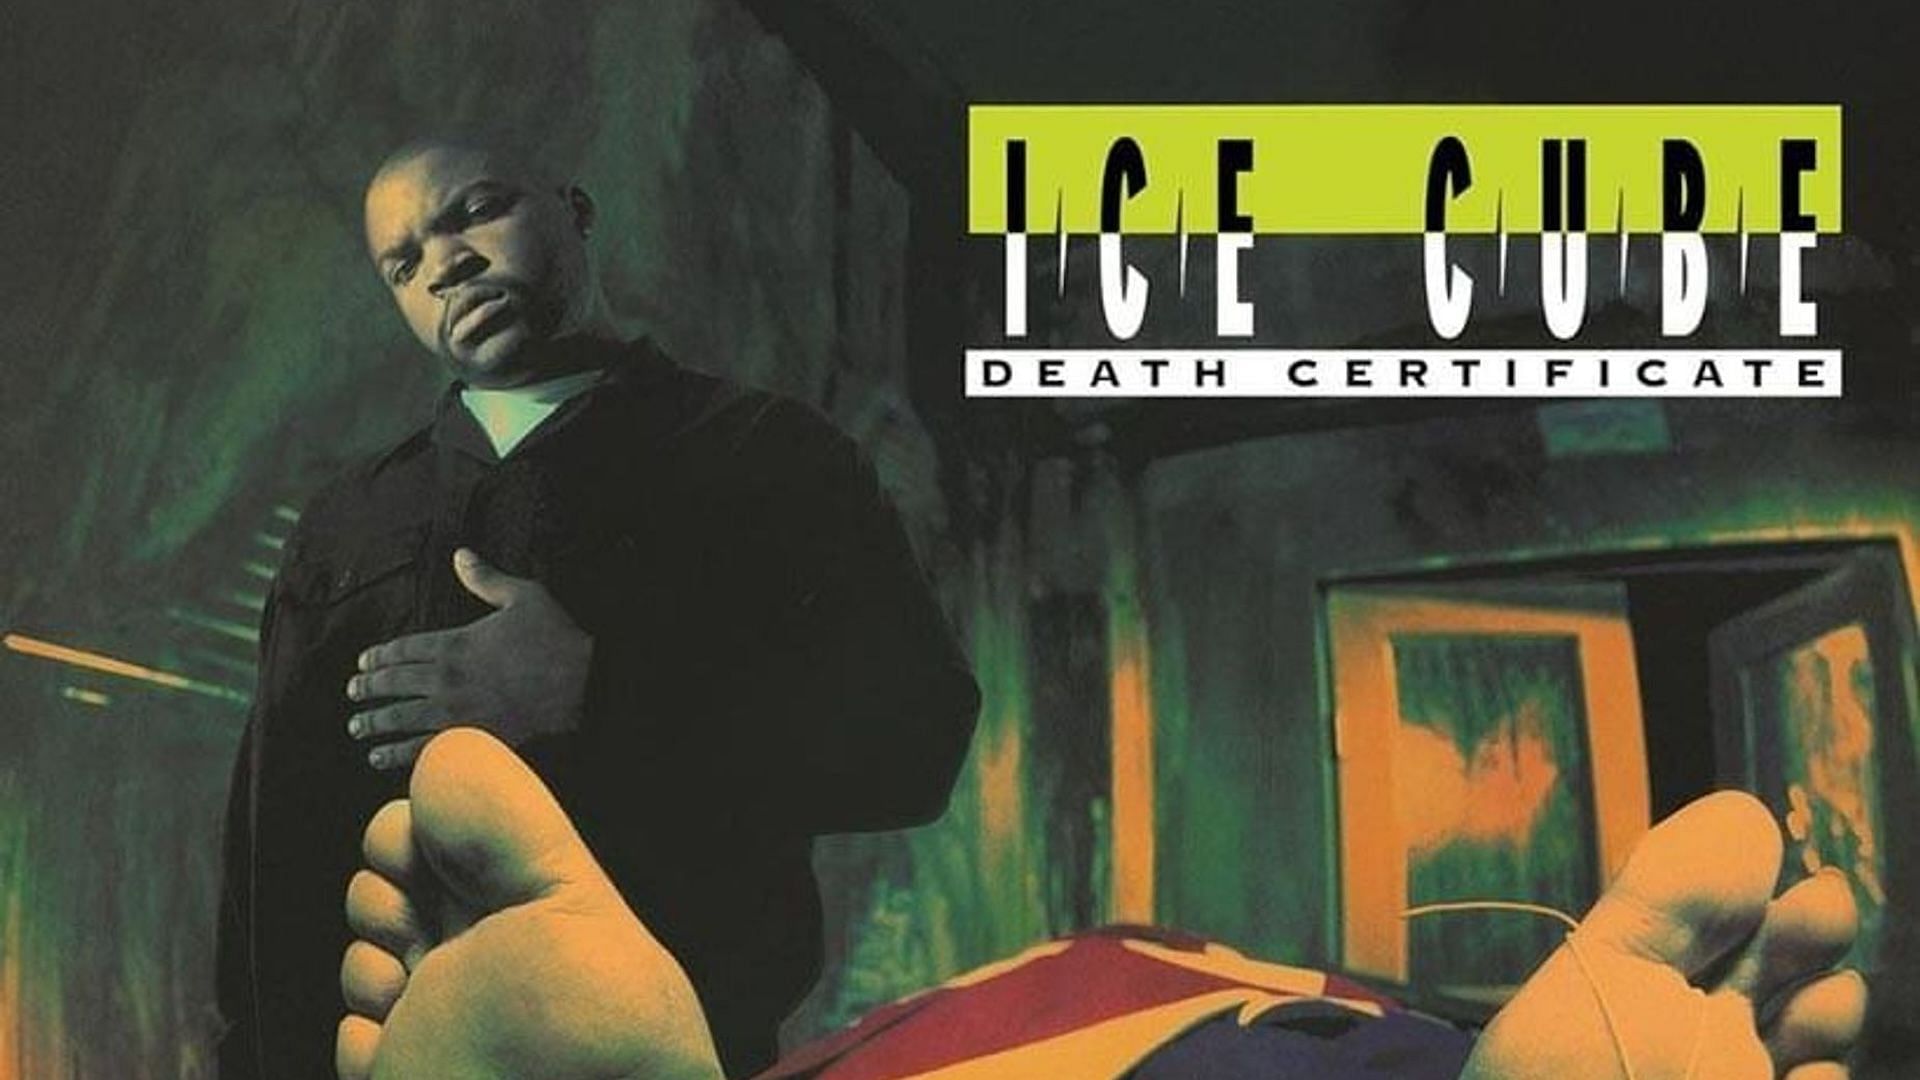 The official album cover for Ice Cube&#039;s 1991 album &#039;Death Certificate&#039; (Image via genius.com)